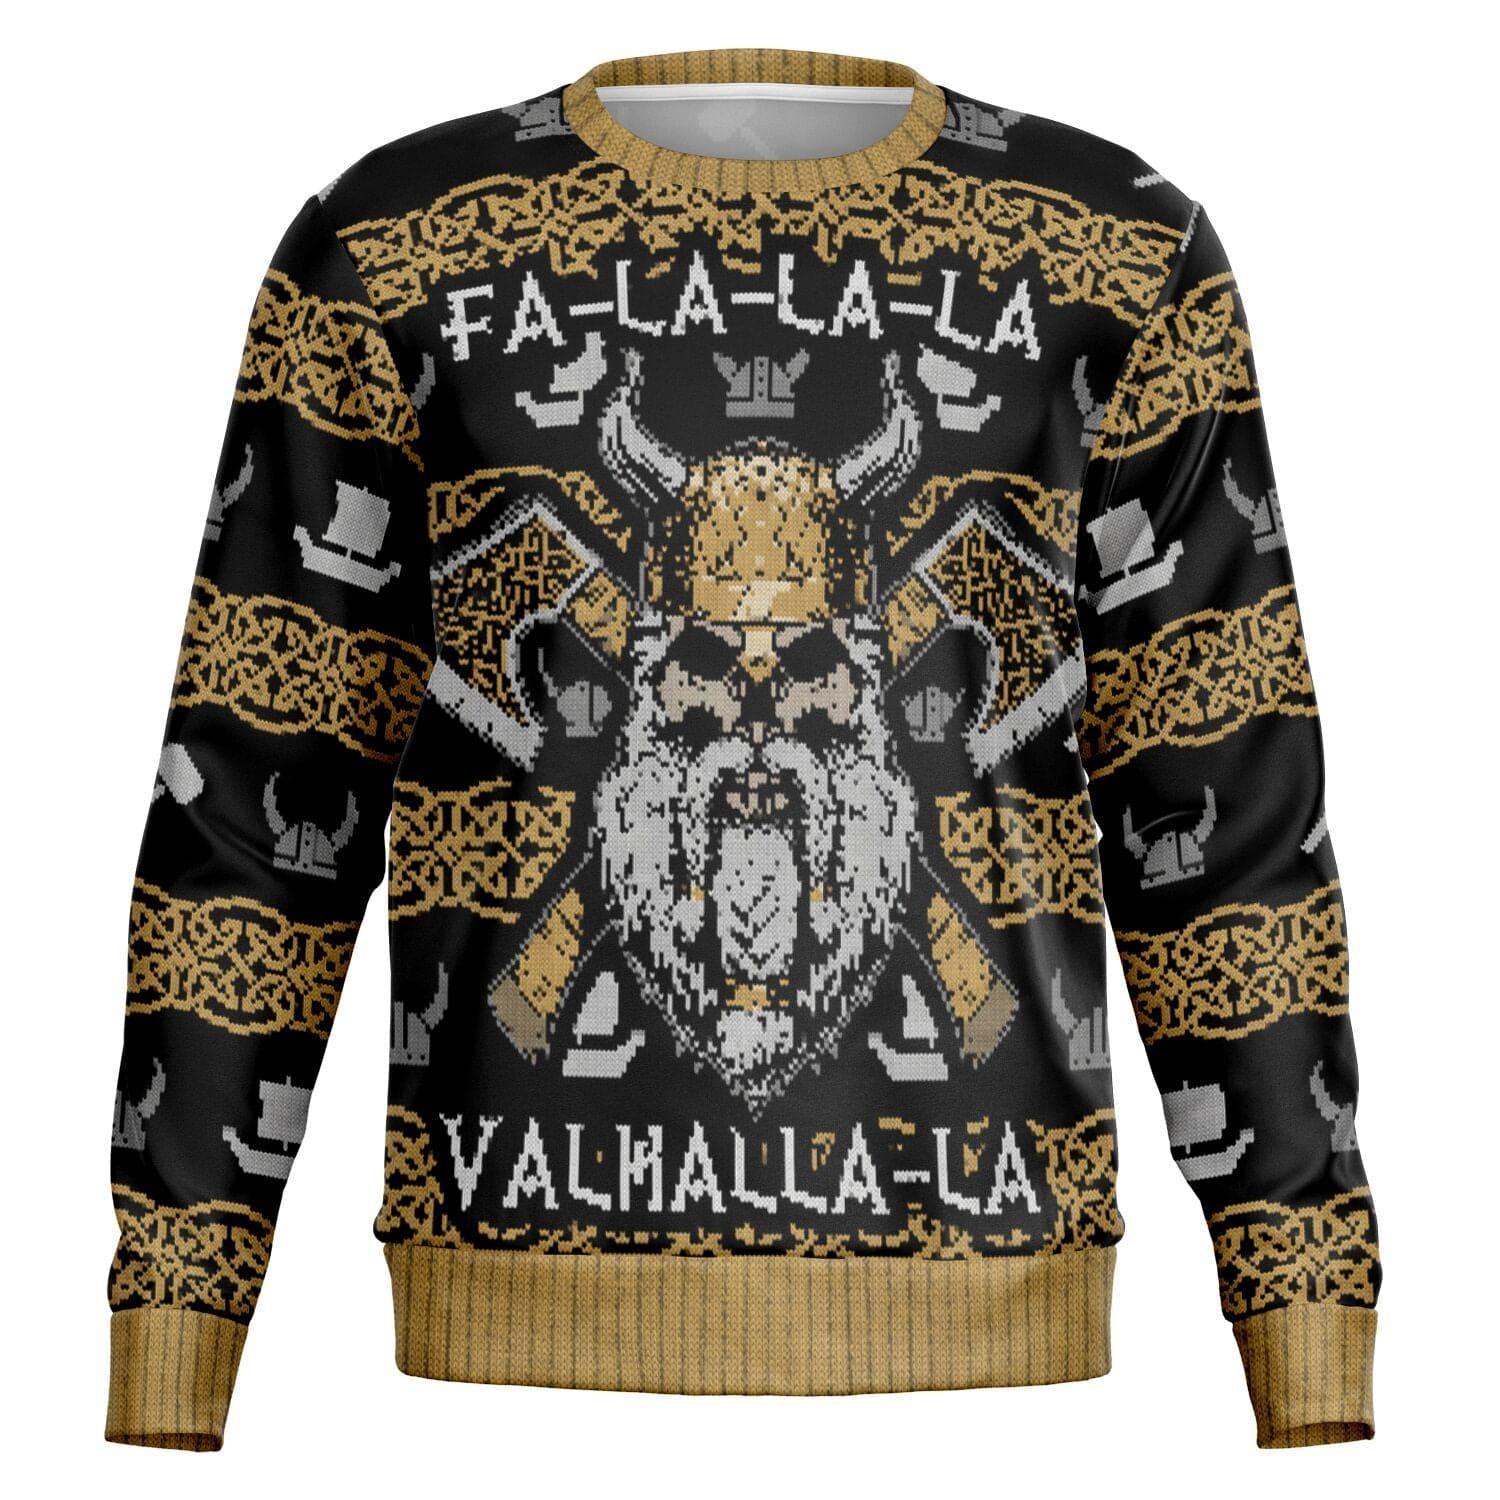 valhalla-fa-la-la-la-valmalla-la-ugly-christmas-sweater